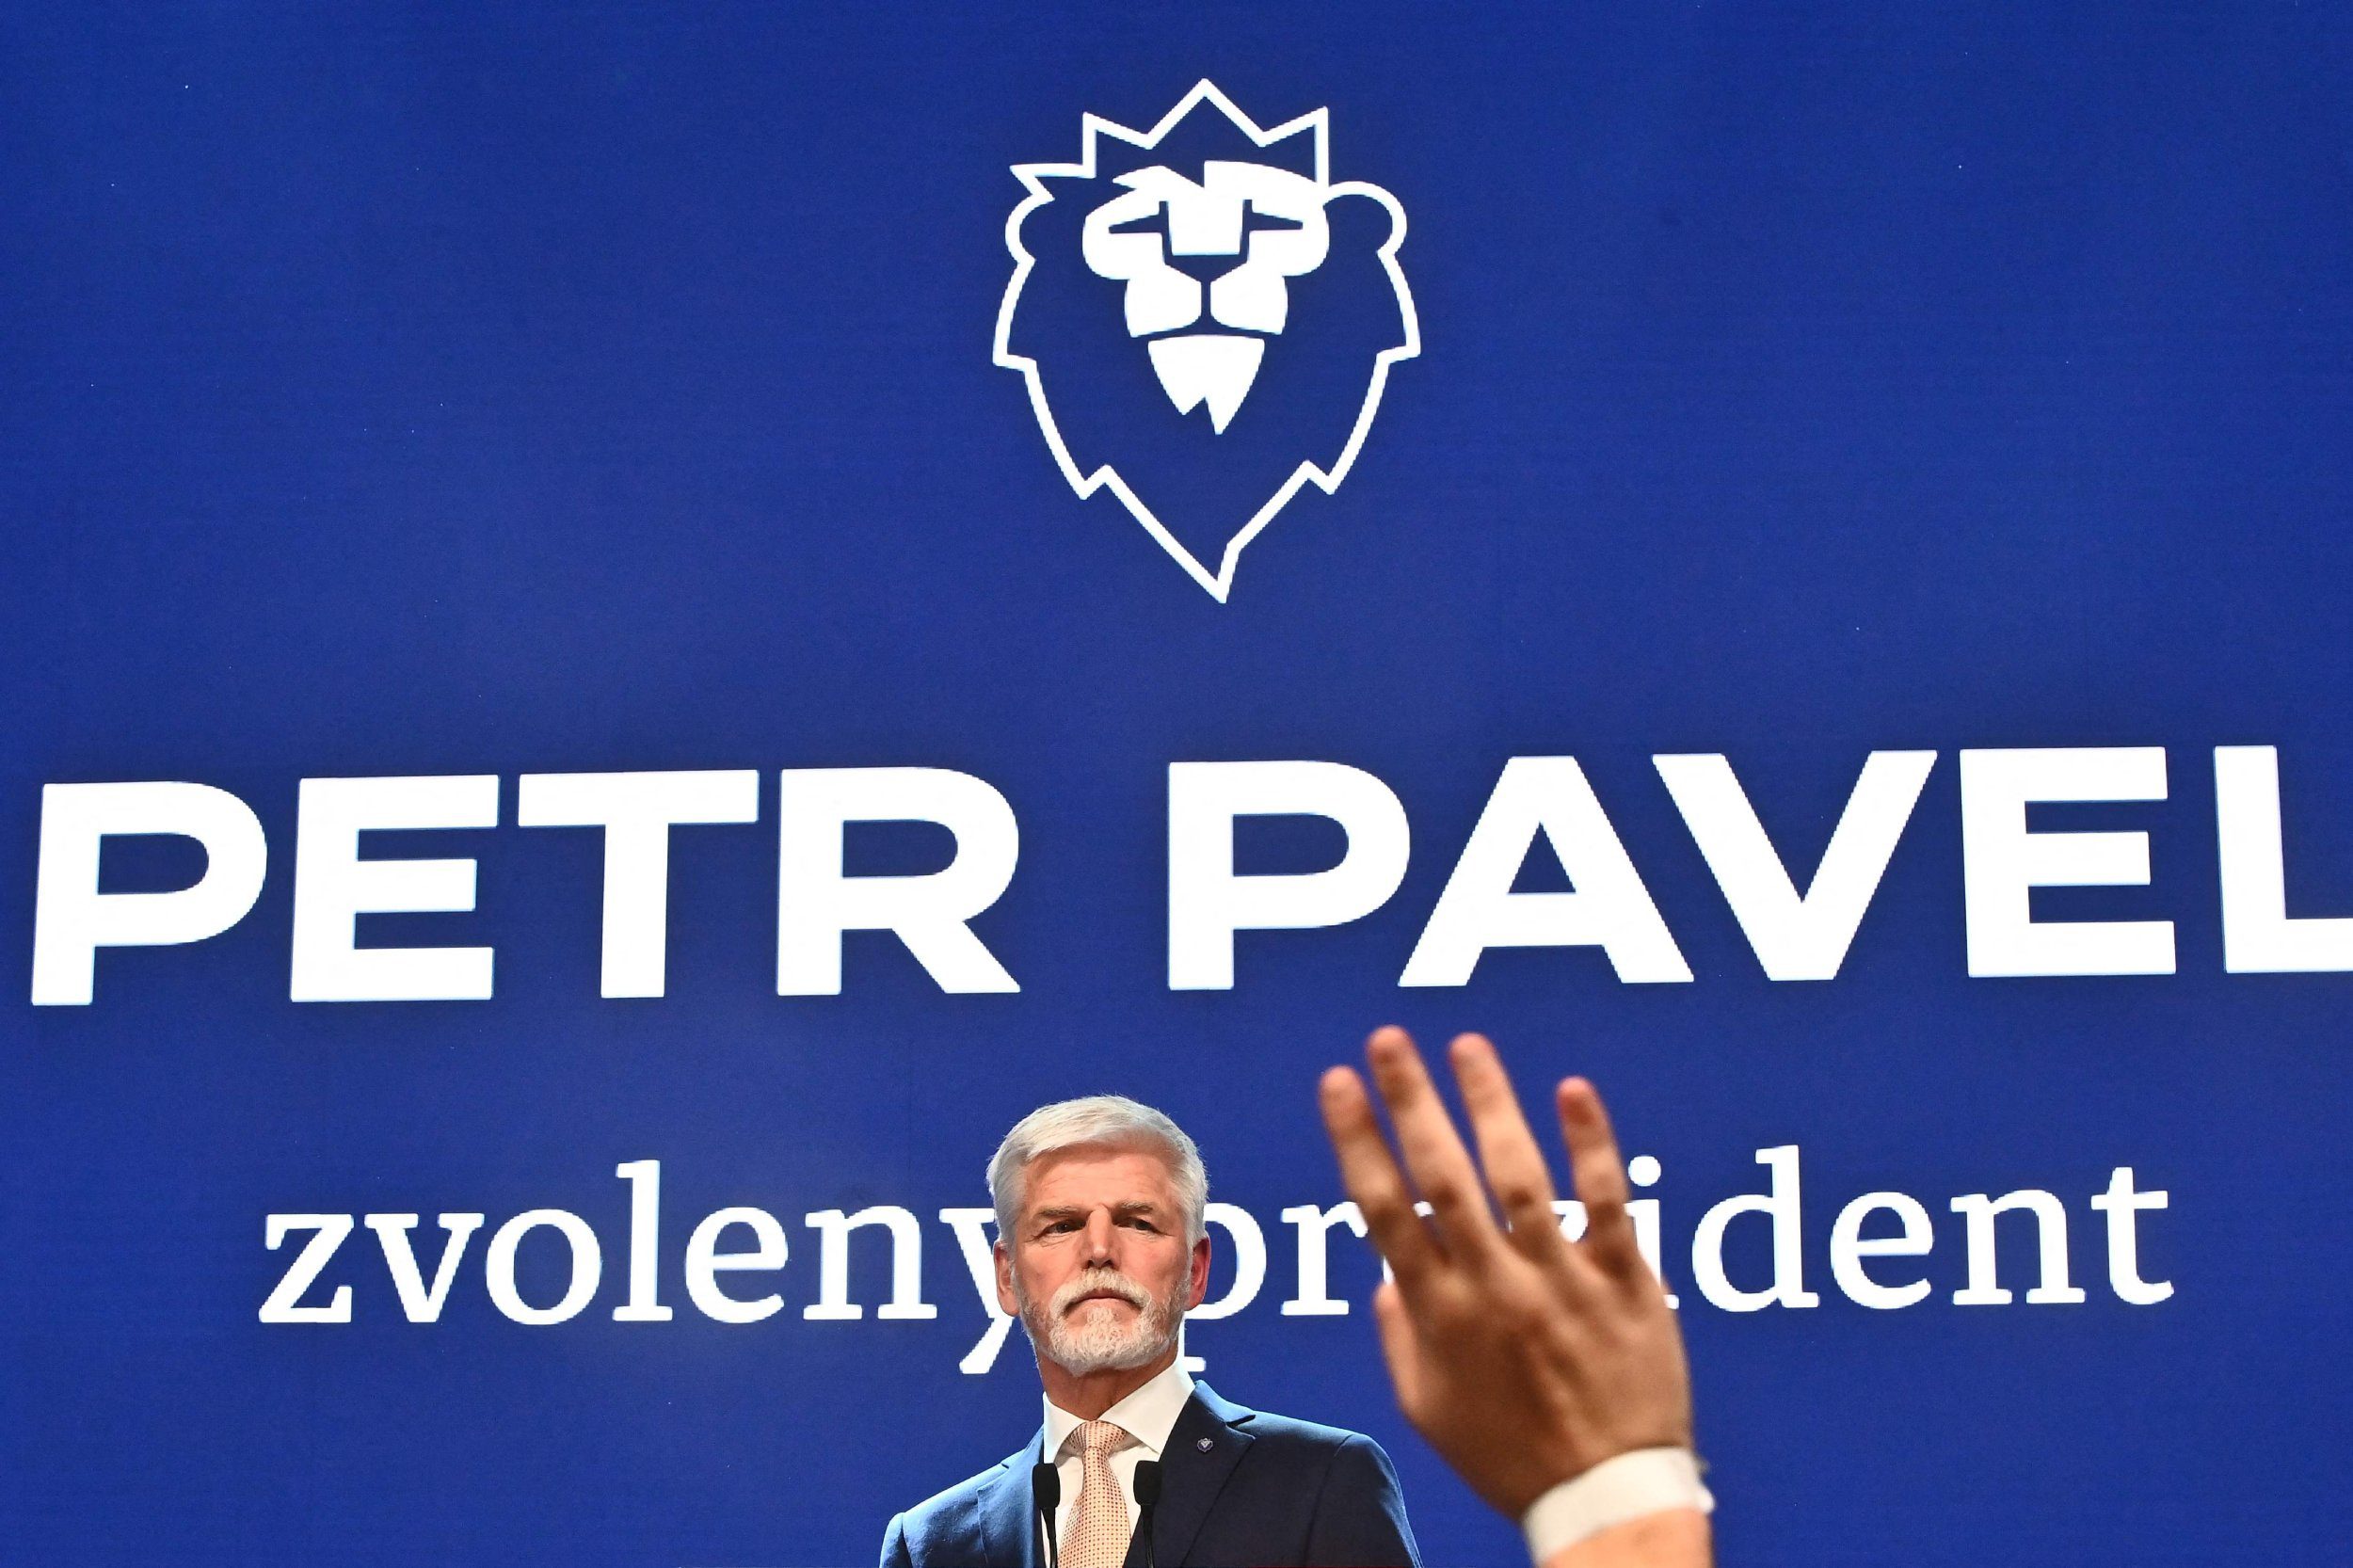 Петр Павел новий президент Чехії